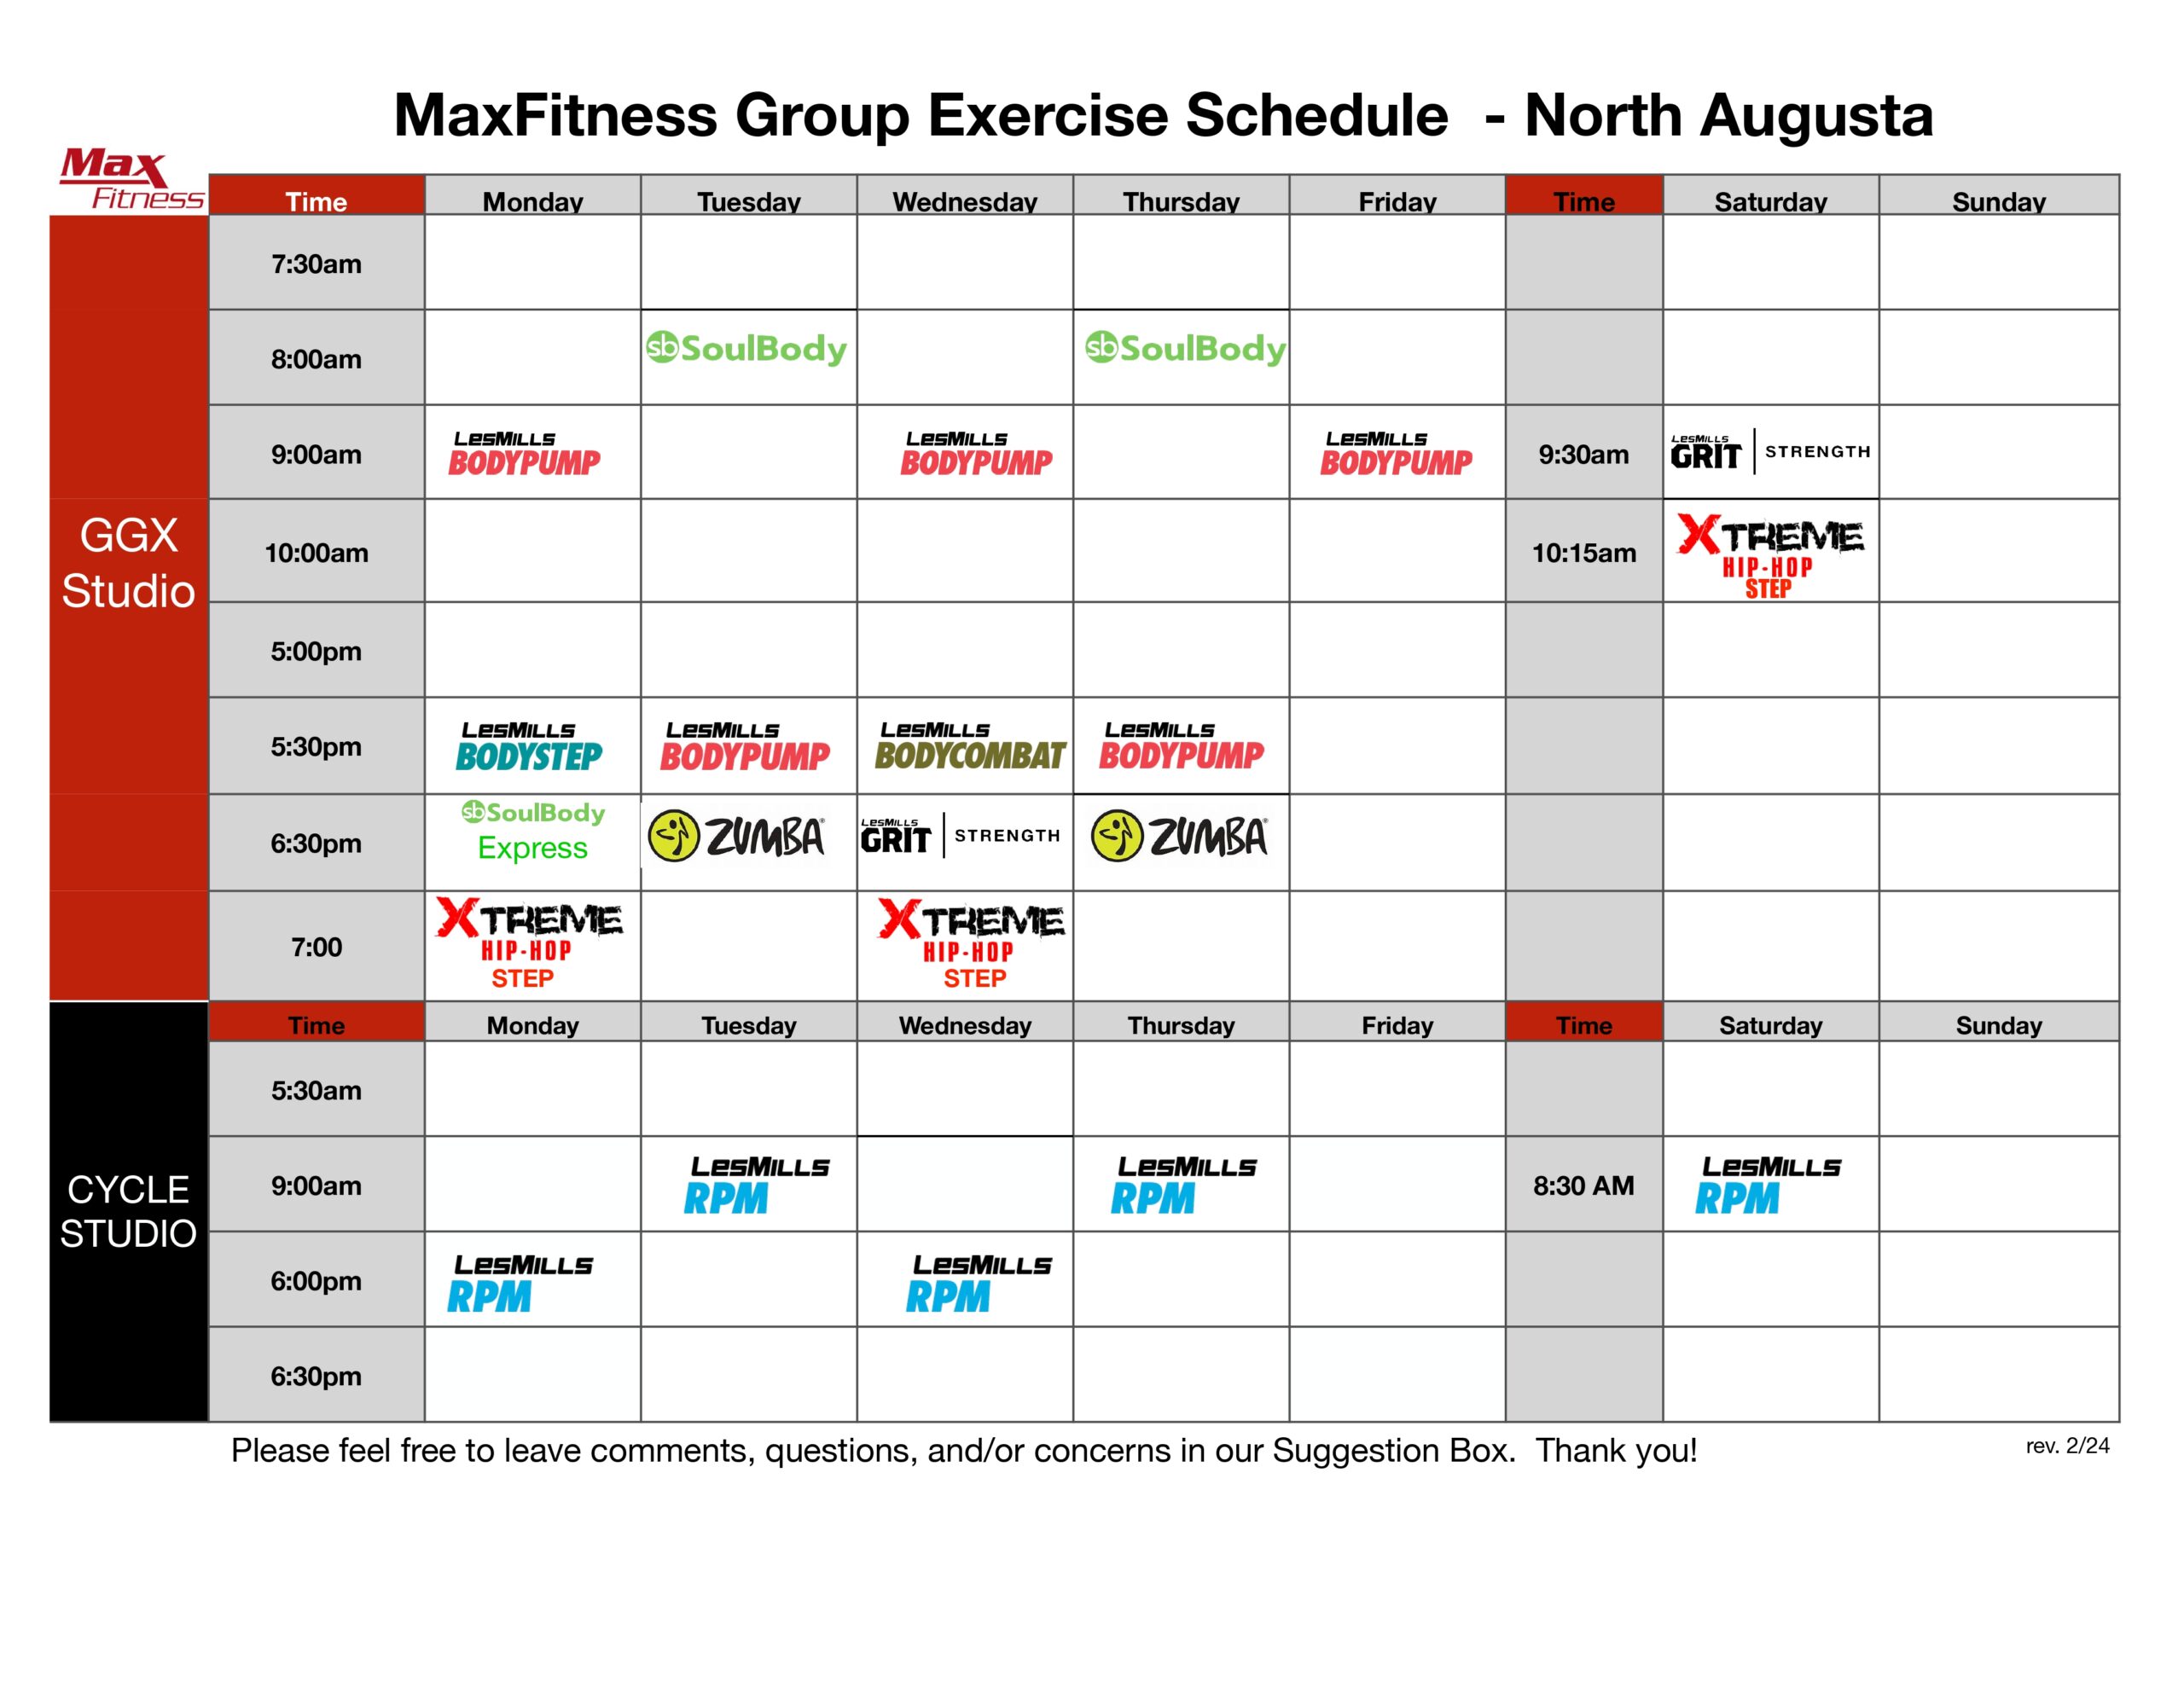 Maxfitness gx schedule north augusta 2023 schedule rev 2 24 scaled - max fitness - north augusta